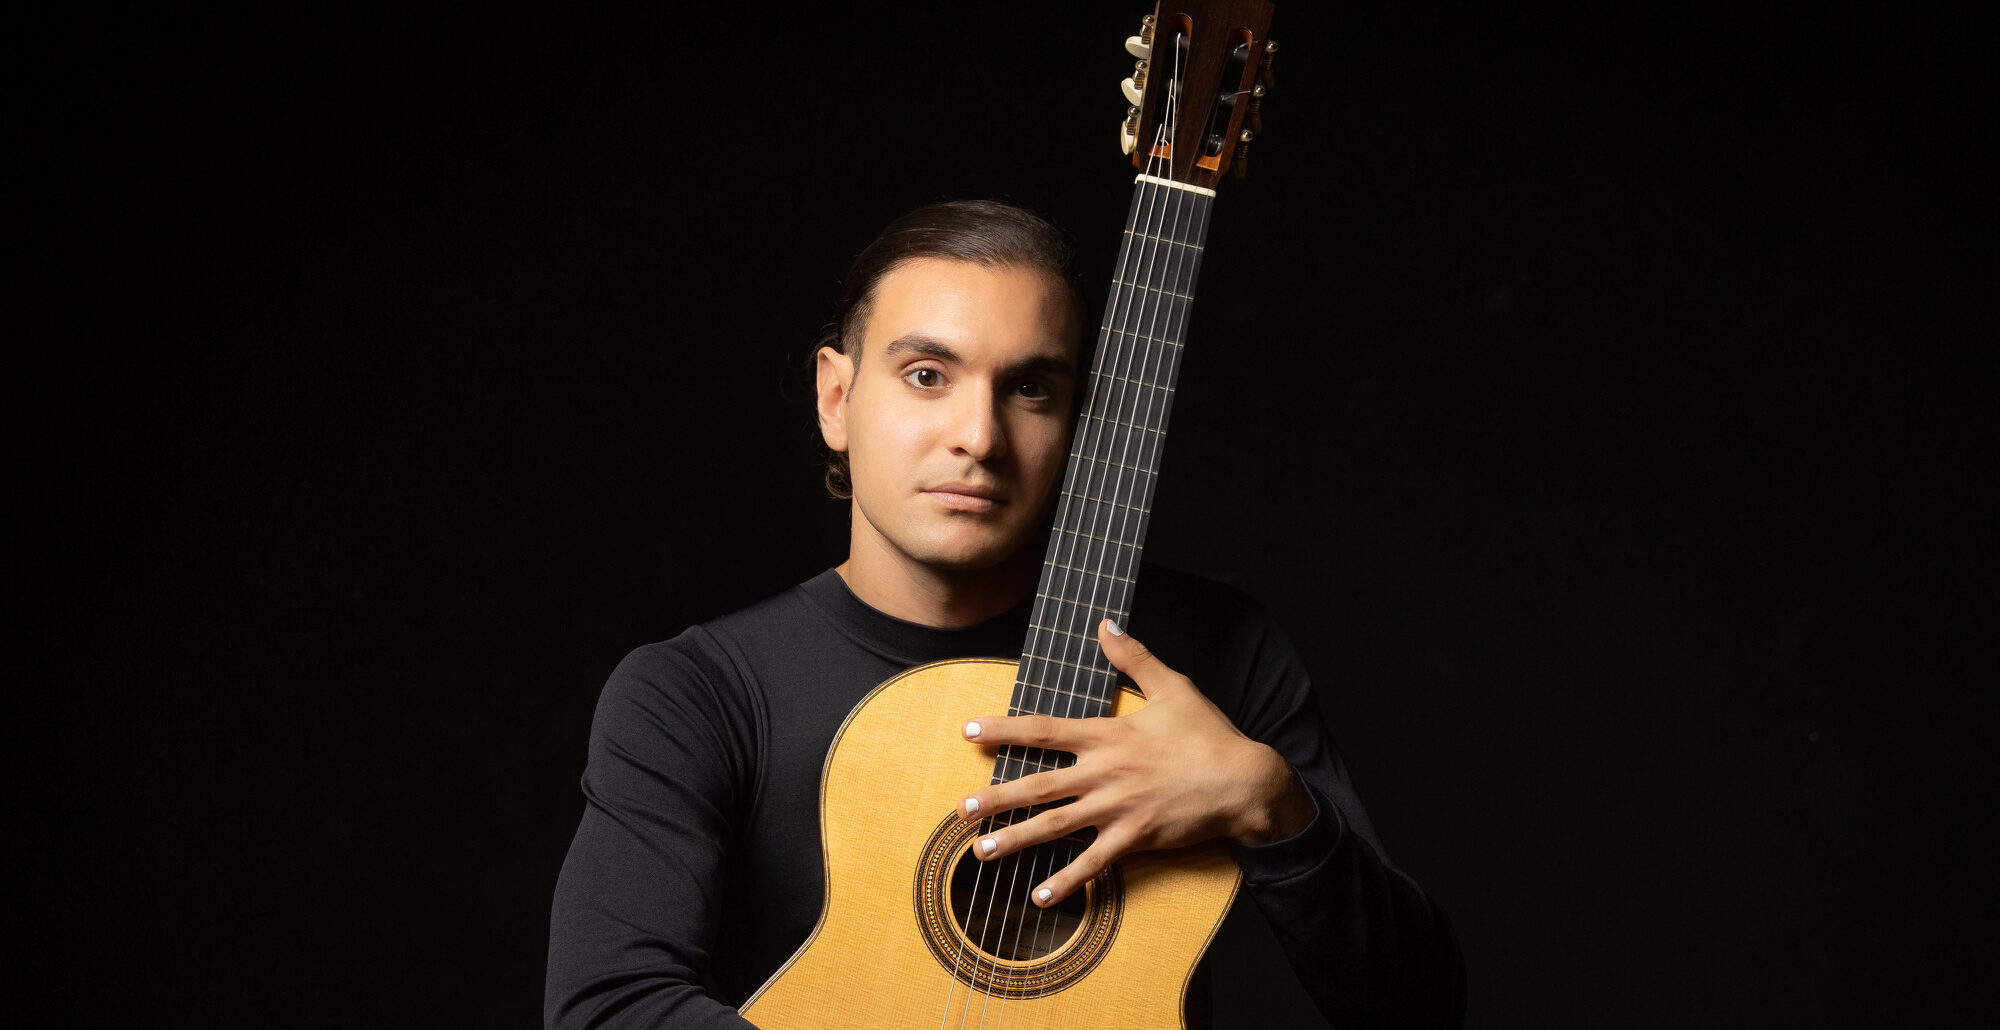 La chitarra del giovane Francesco De Luca protagonista alla Casa della Musica